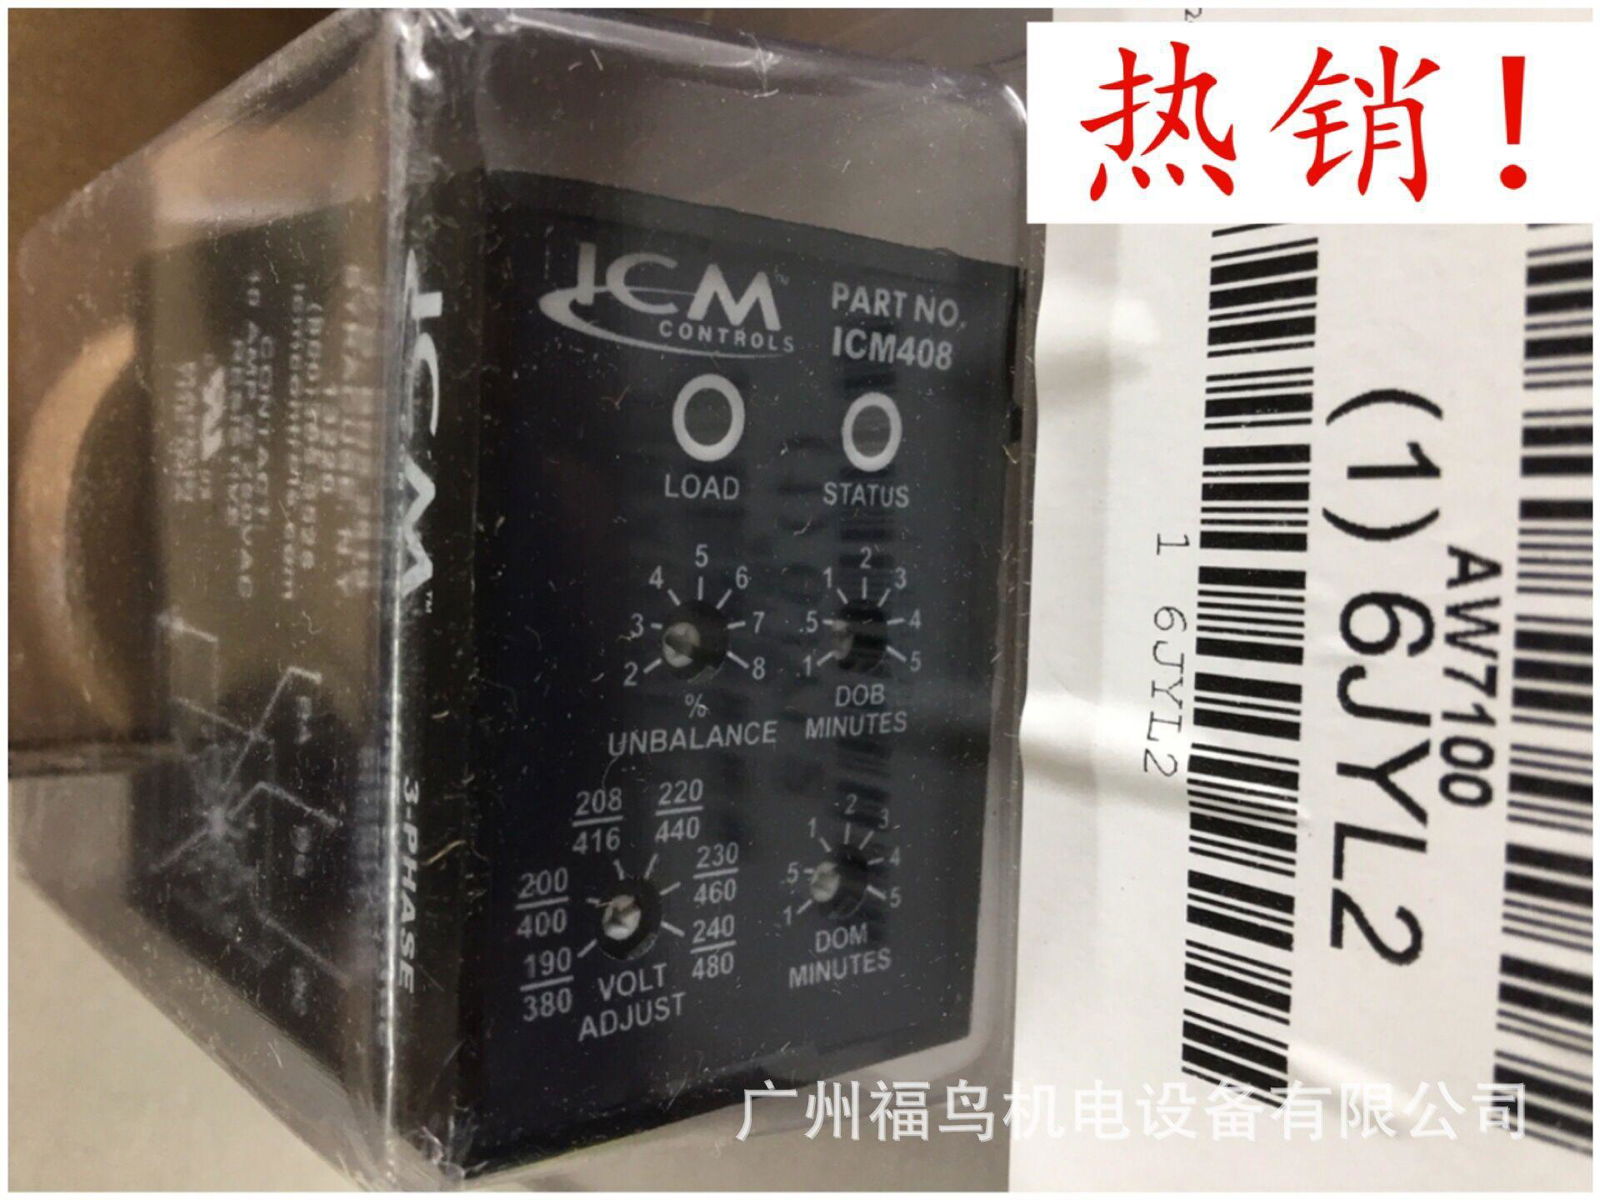 ICM继电器, 型号: ICM408